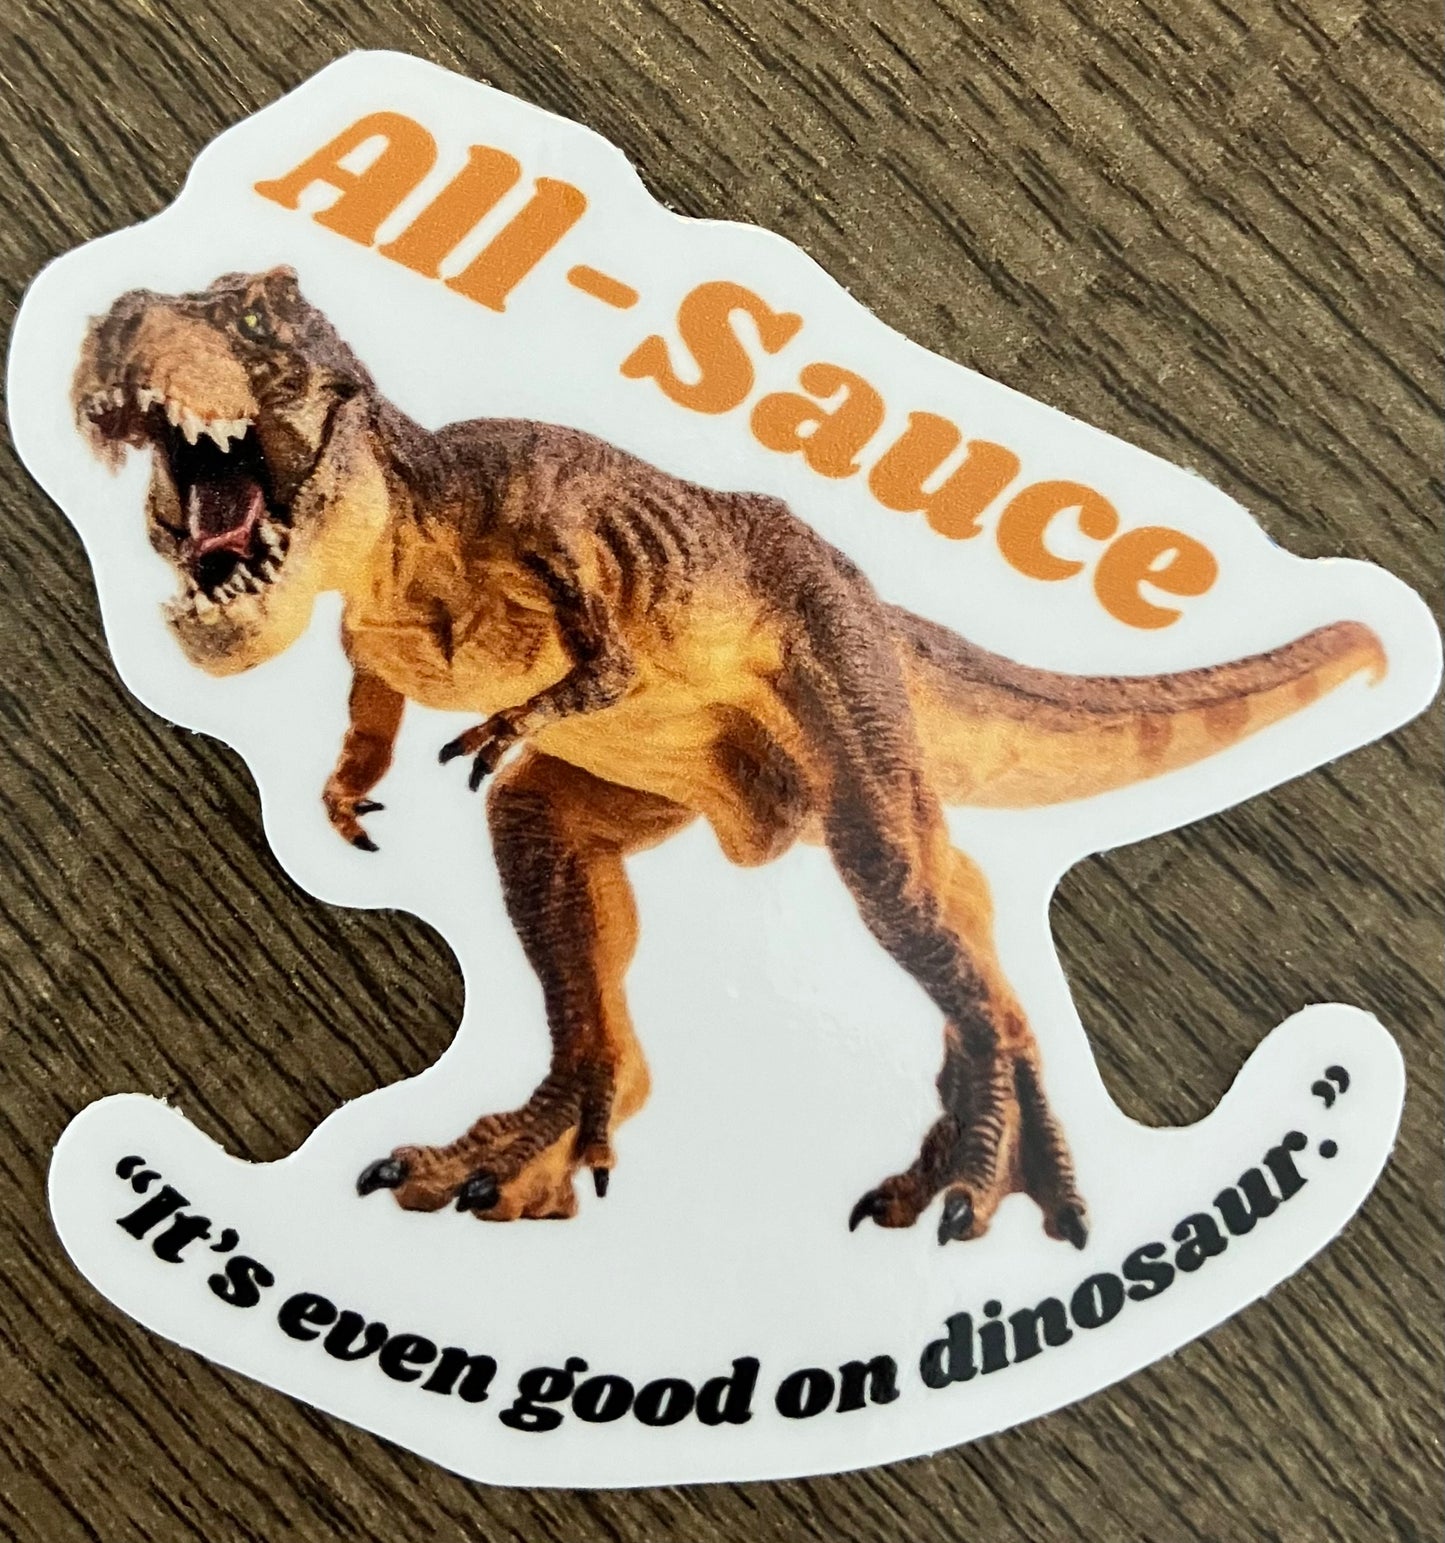 All-Sauce Sticker - “It’s Even Good On Dinosaur.”